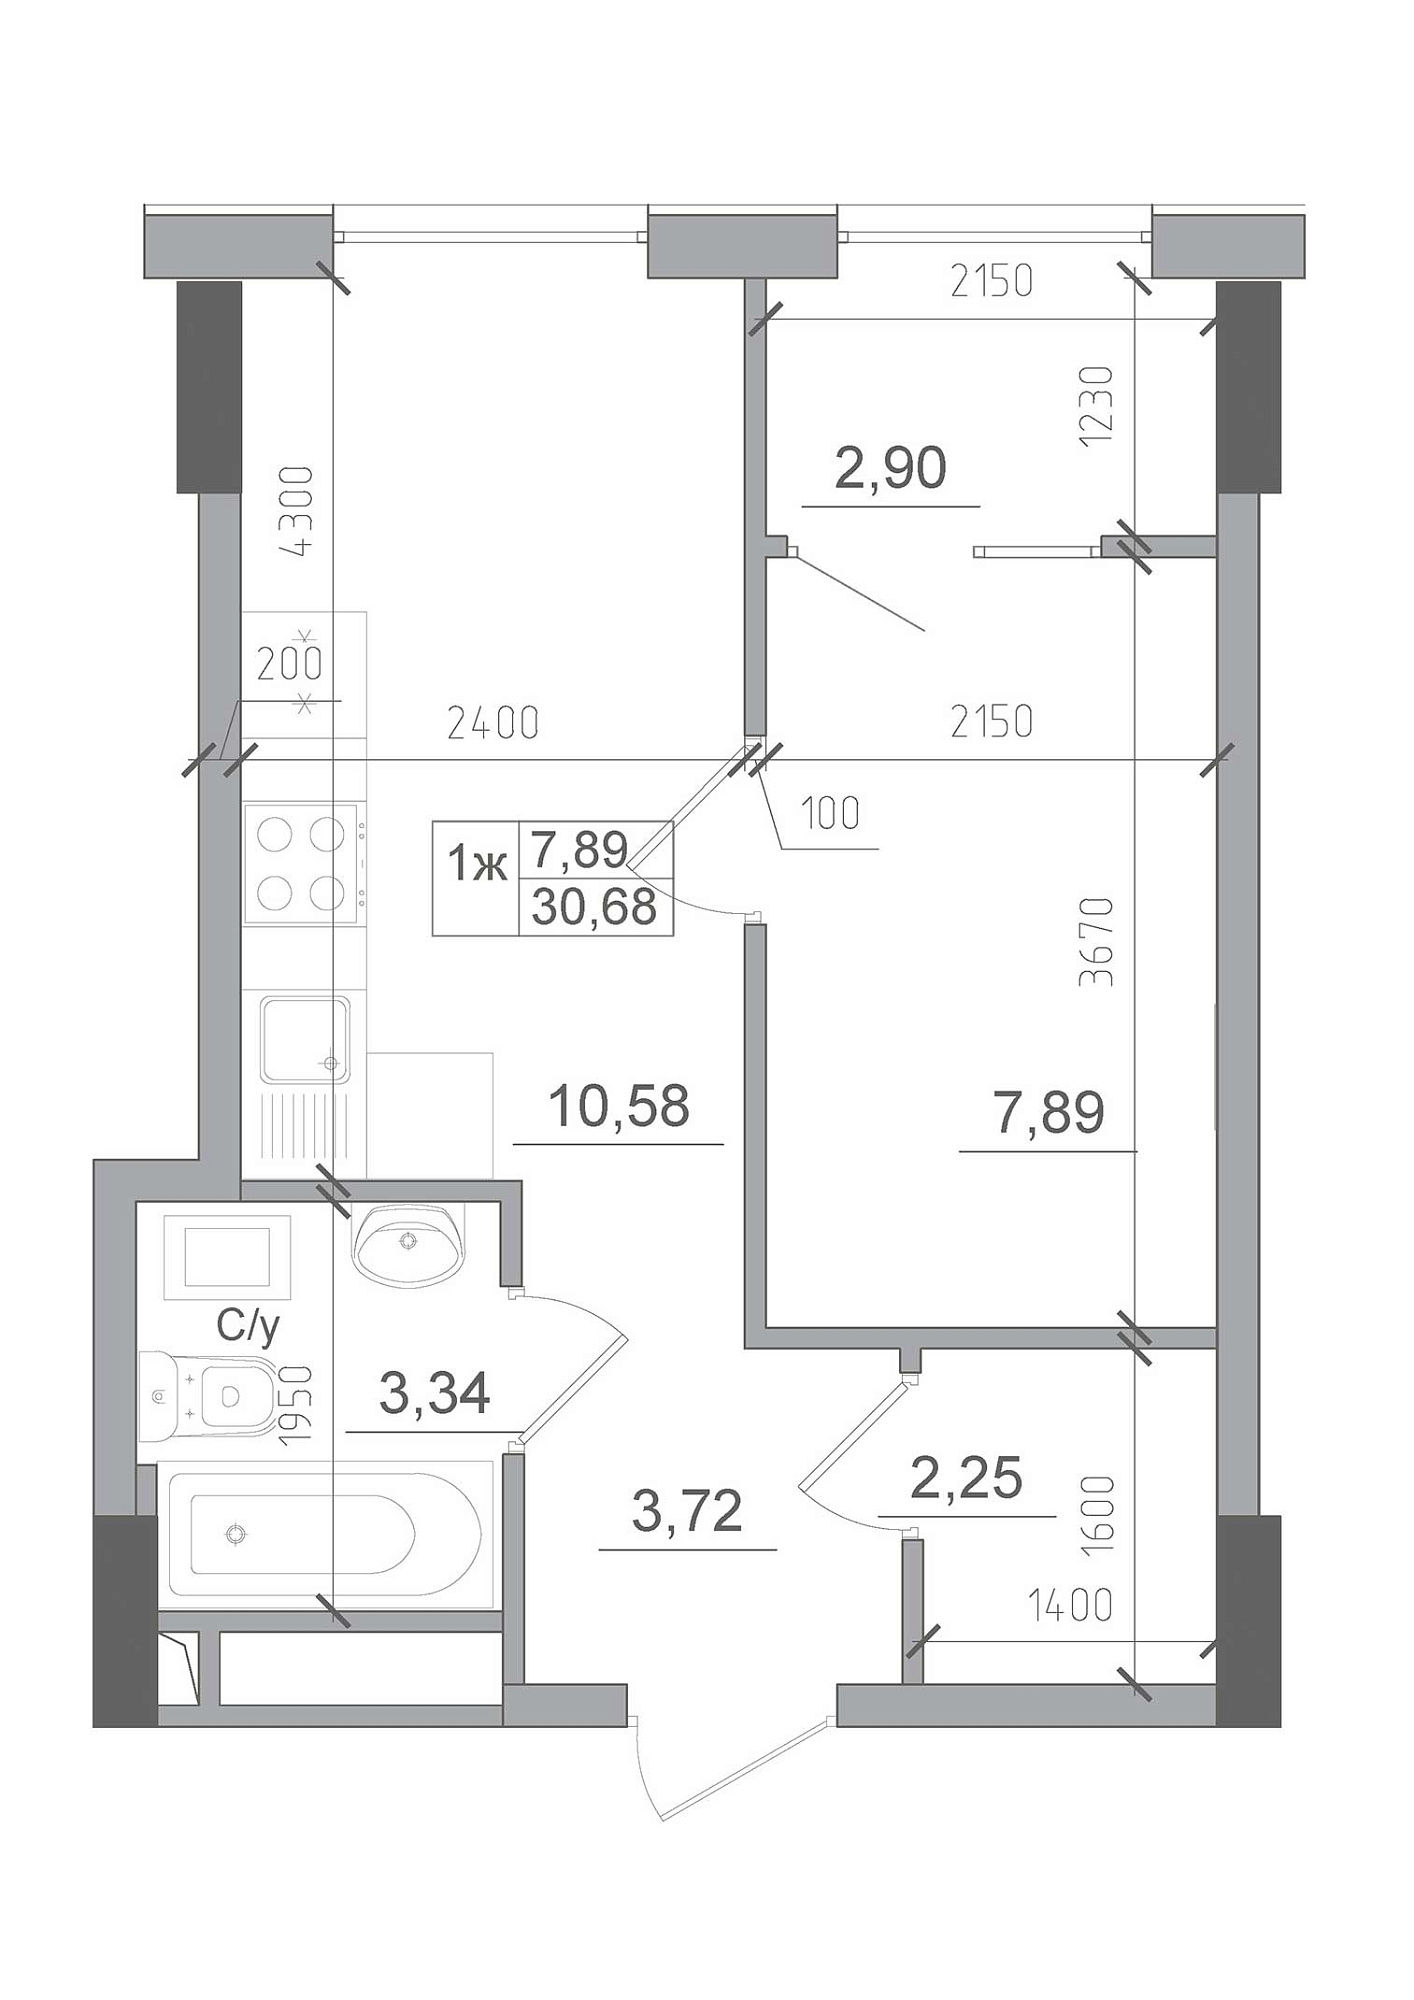 Планировка 1-к квартира площей 30.68м2, AB-22-05/00012.